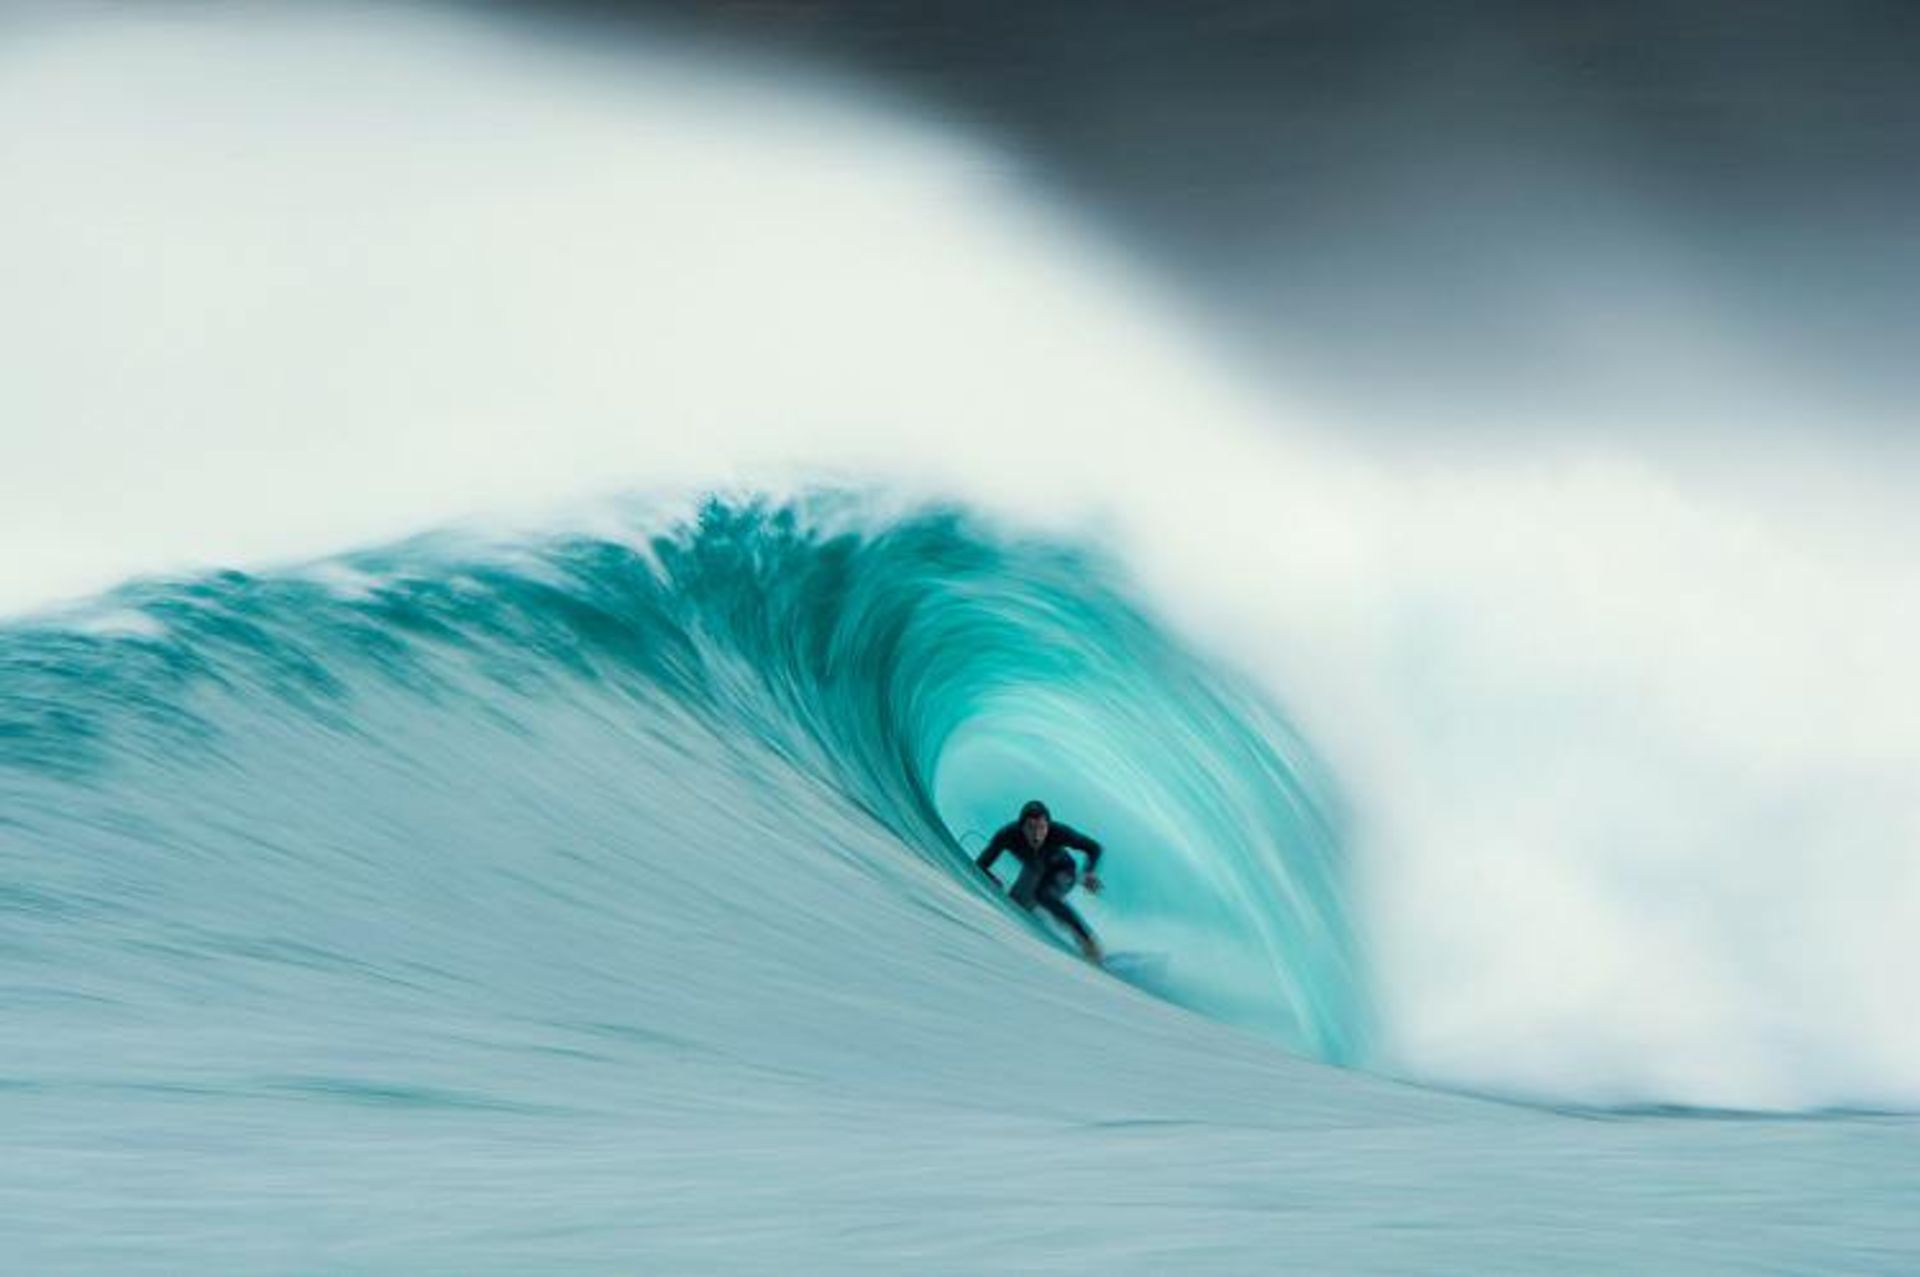 مرجع متخصصين ايران عكس فيناليست پيتر جوويك 2020  Surf Photo Nikon Australia